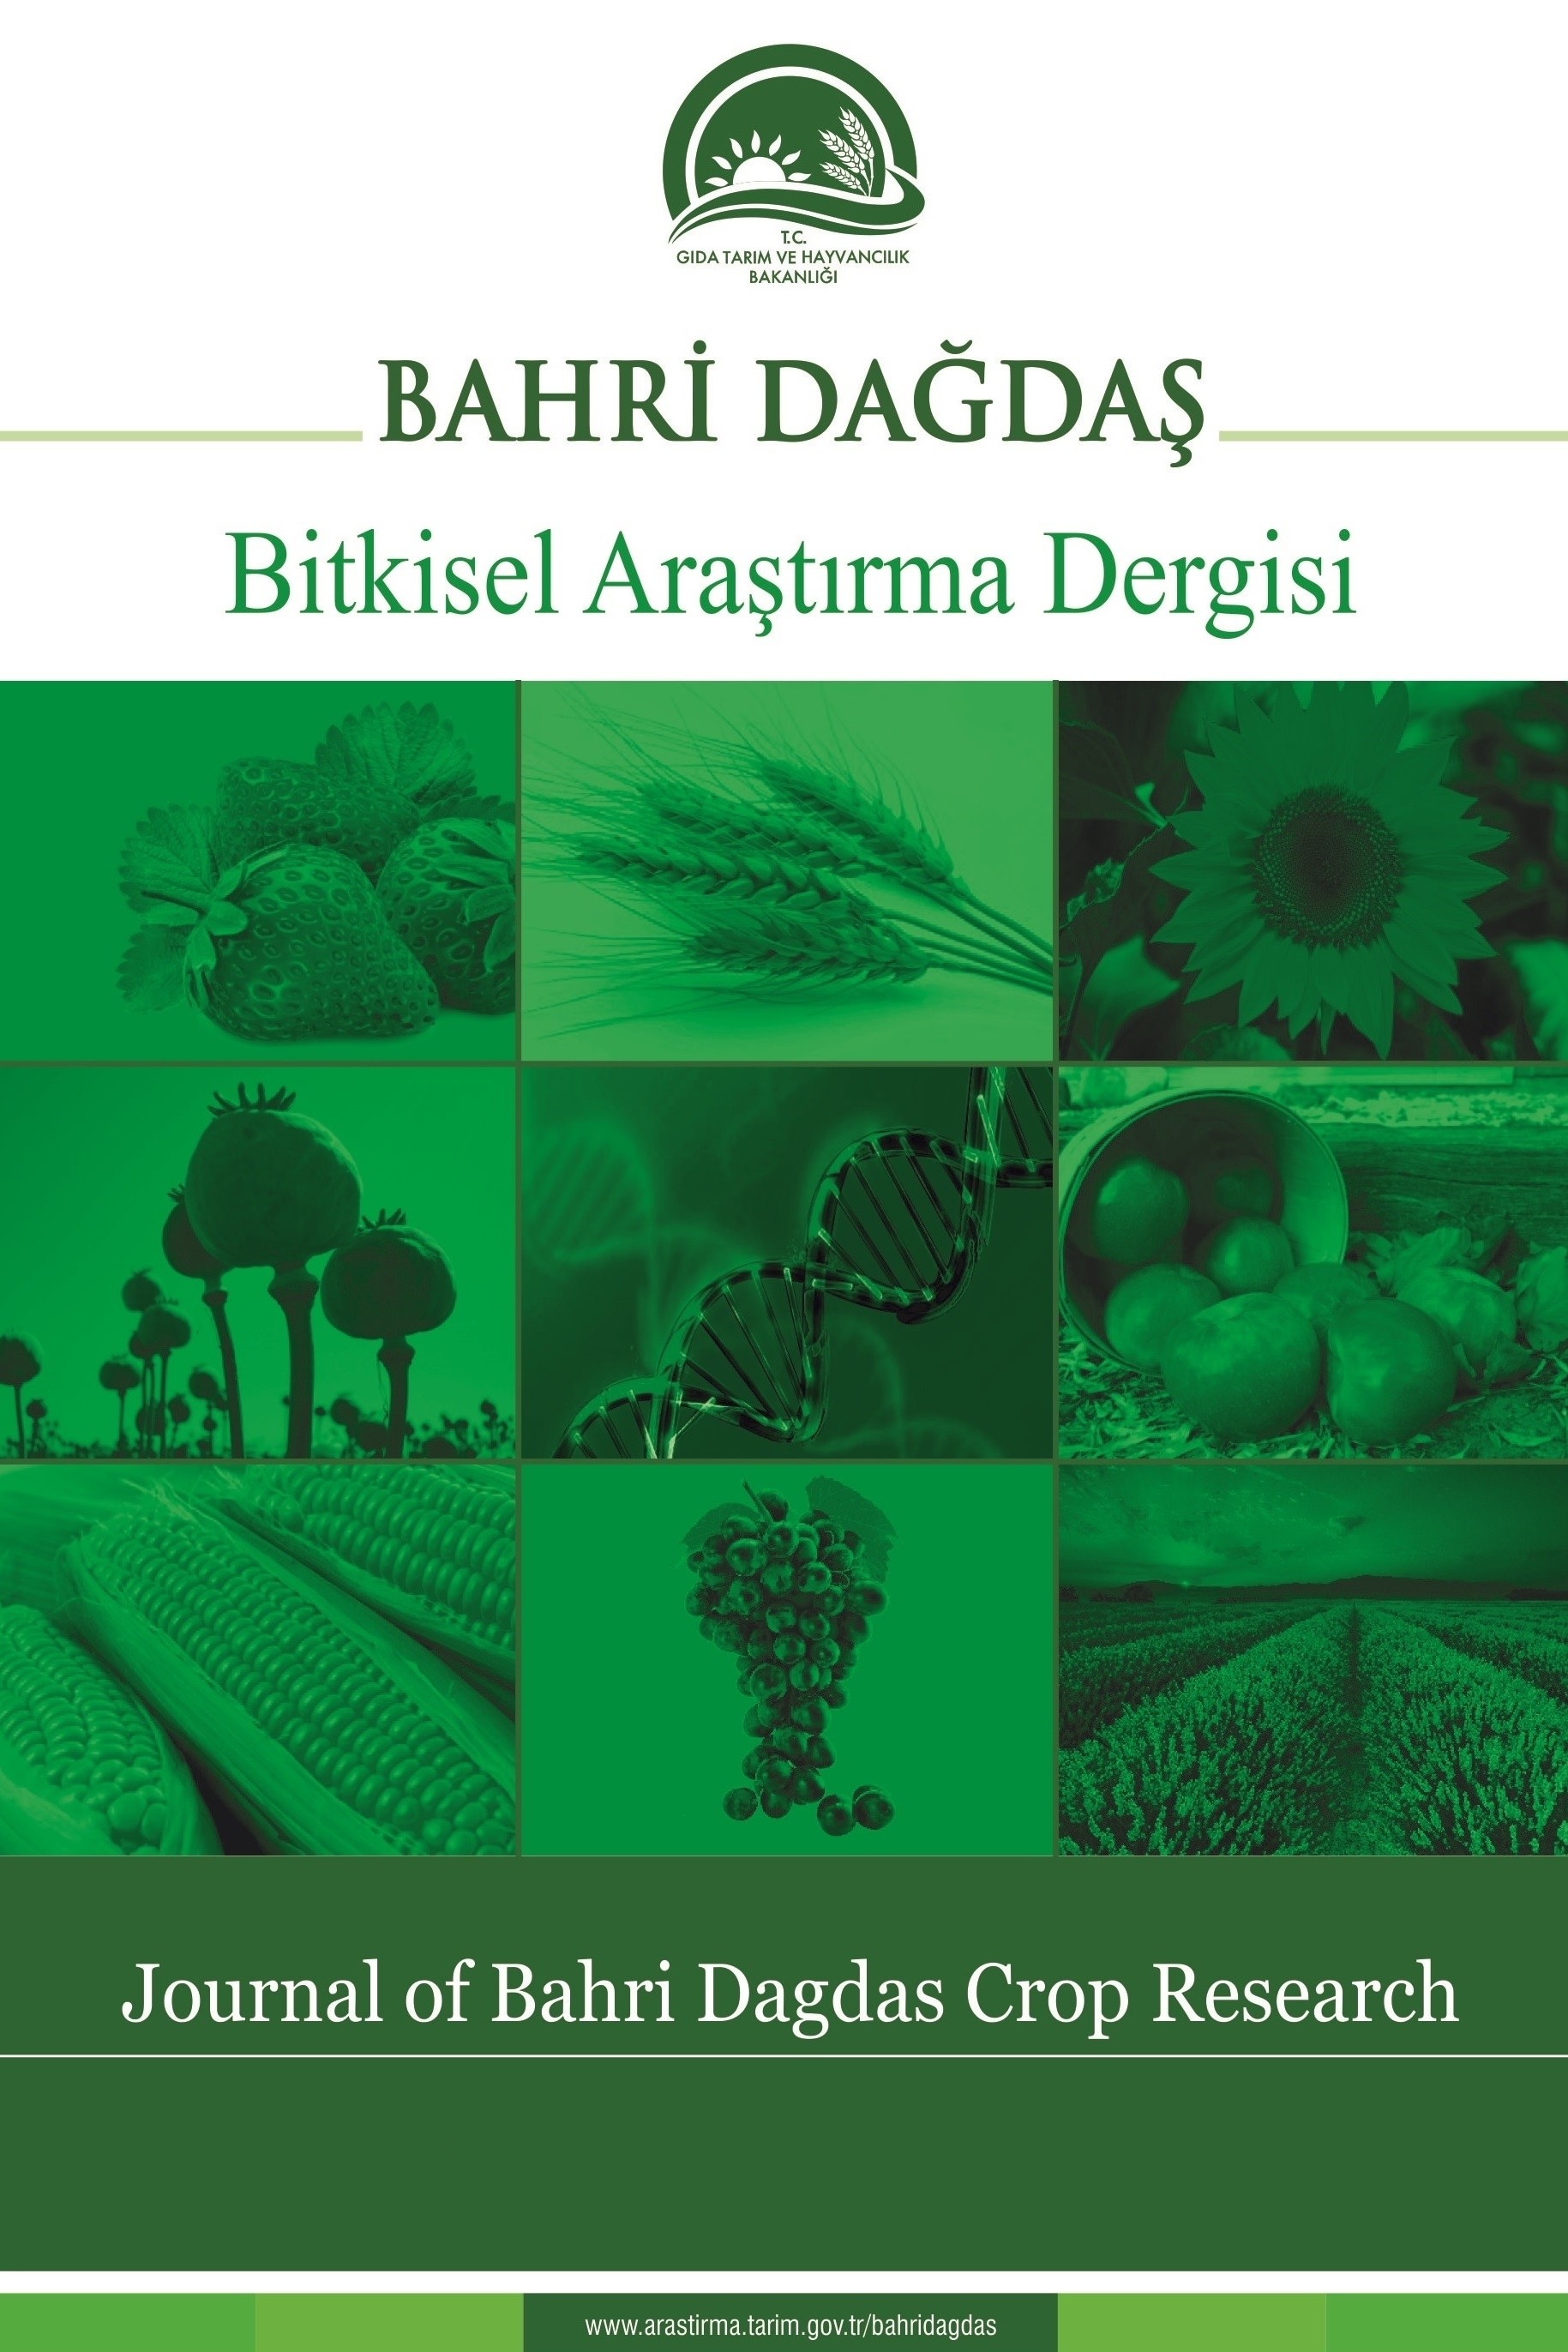 Bahri Dağdaş Bitkisel Araştırma Dergisi-Cover